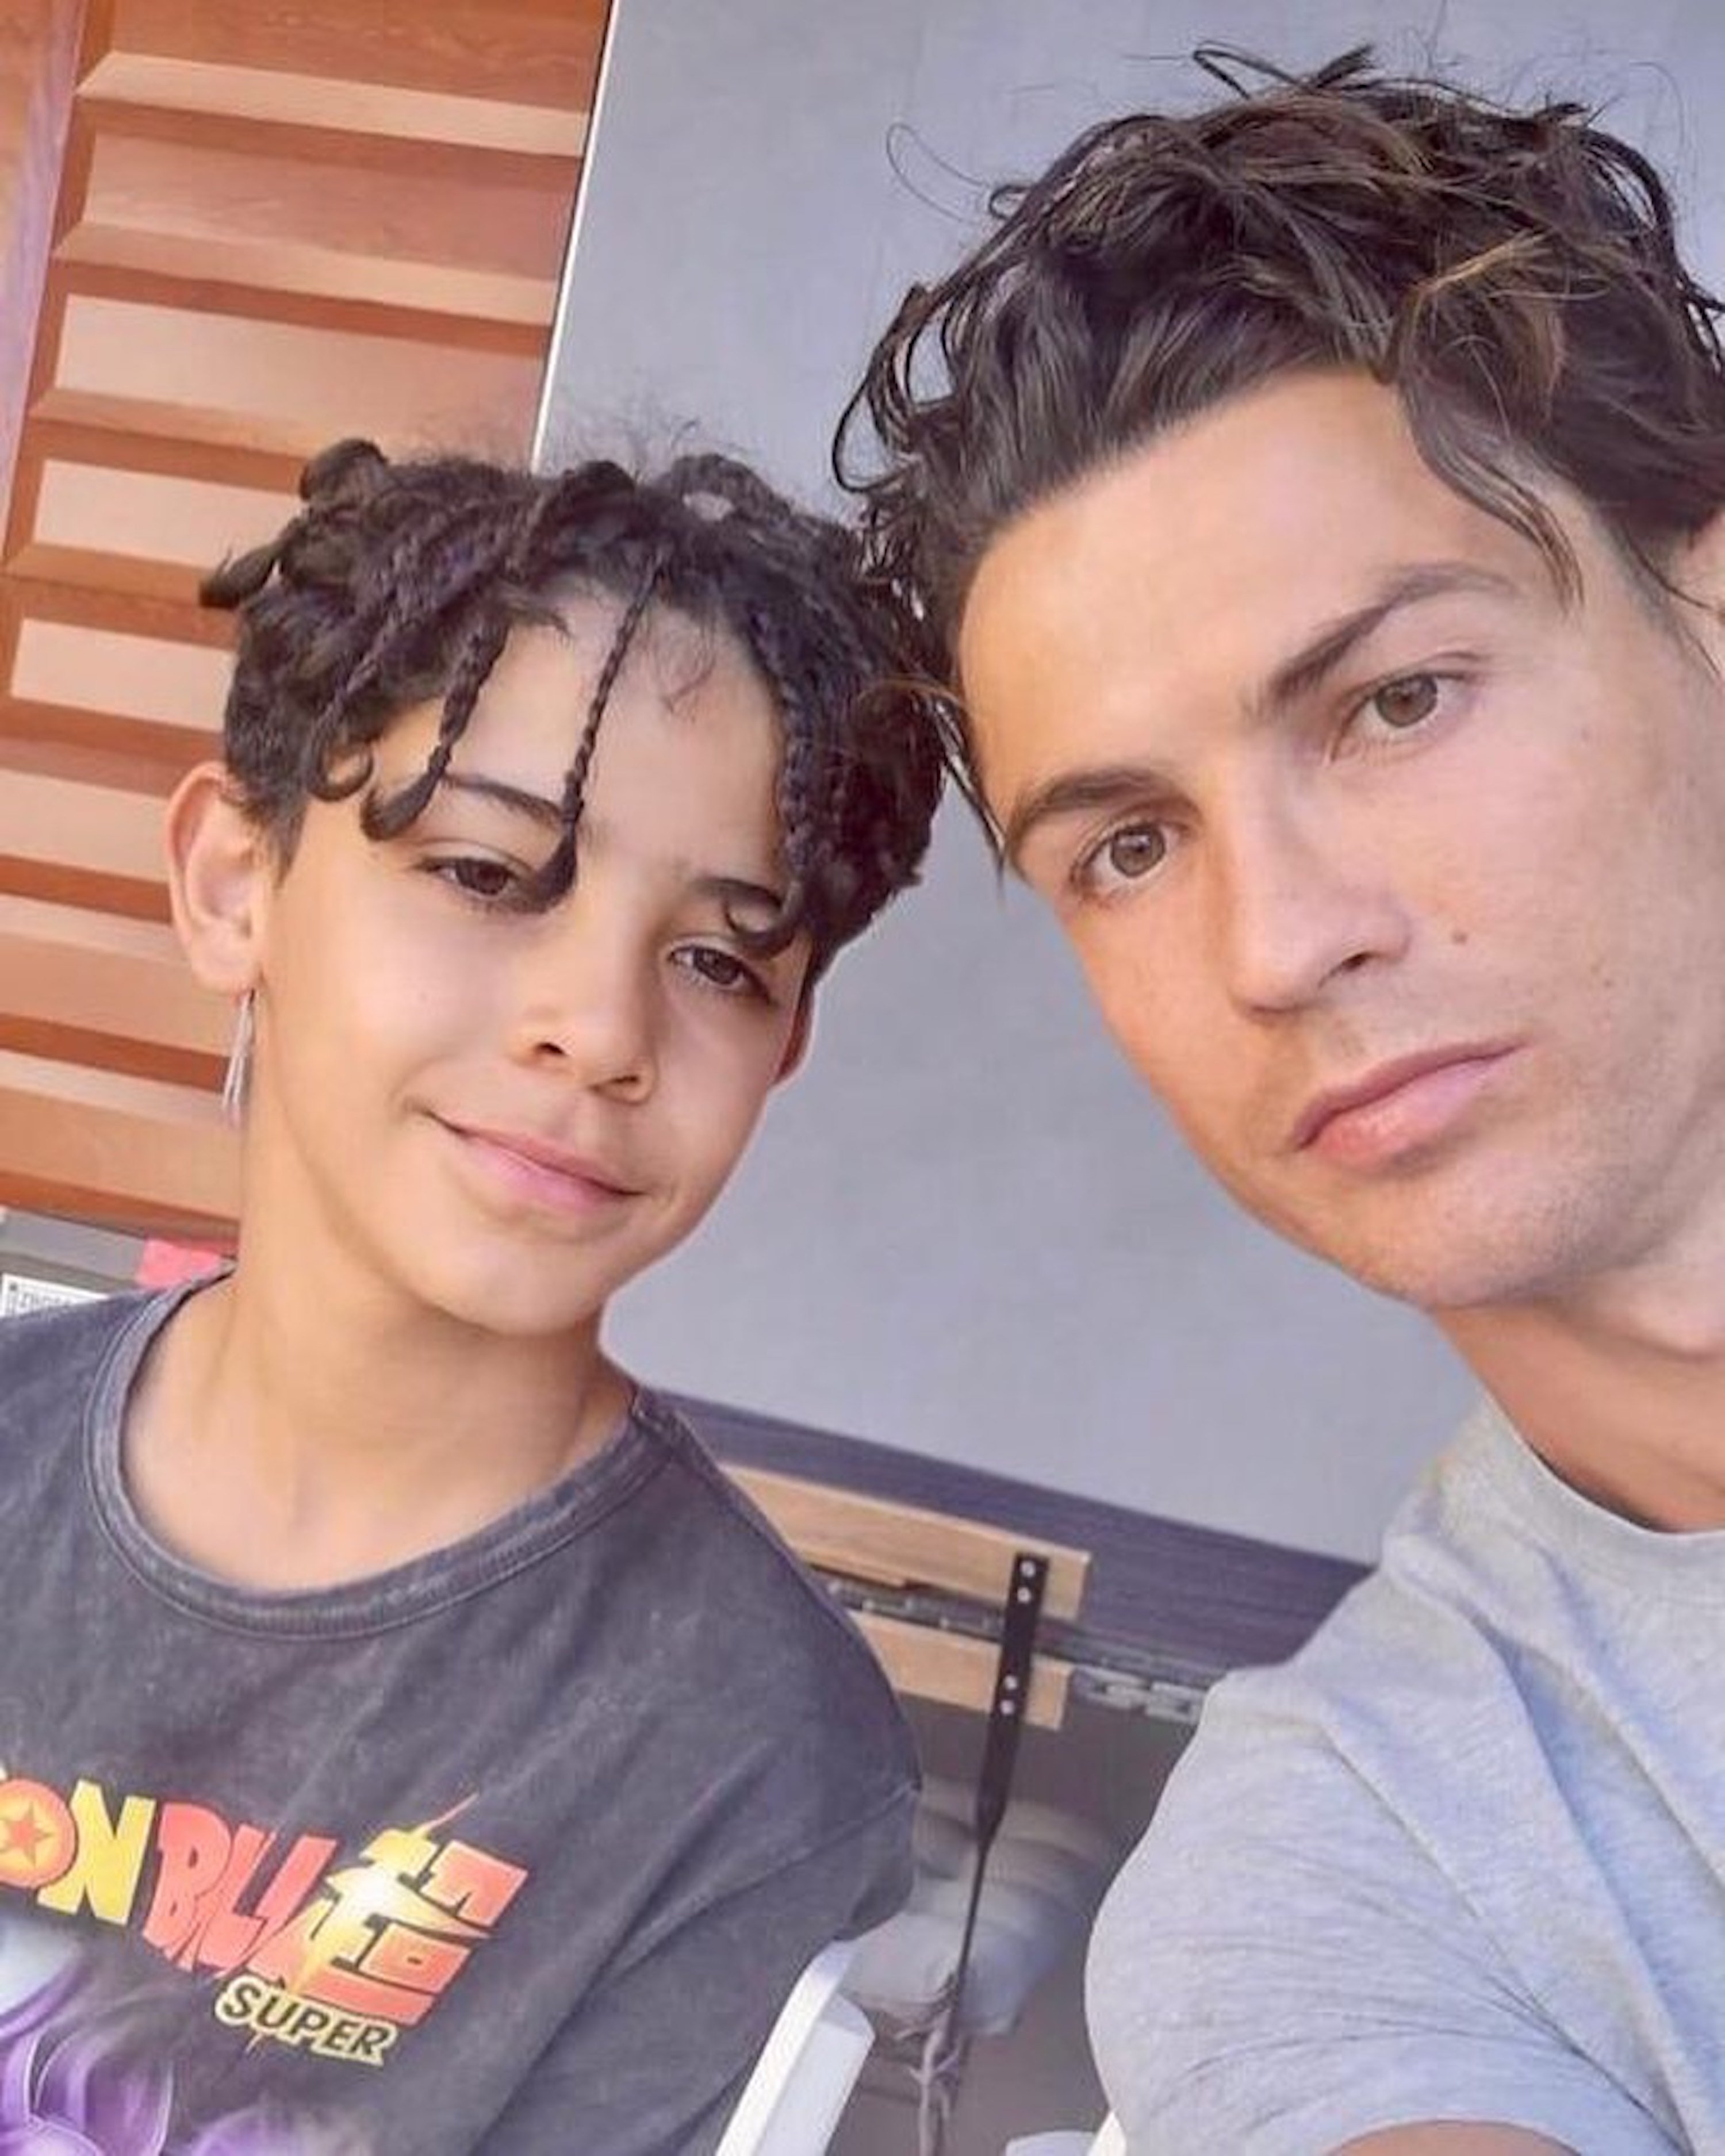 La duresa amb l'alimentació de Cristiano Ronaldo al seu fill